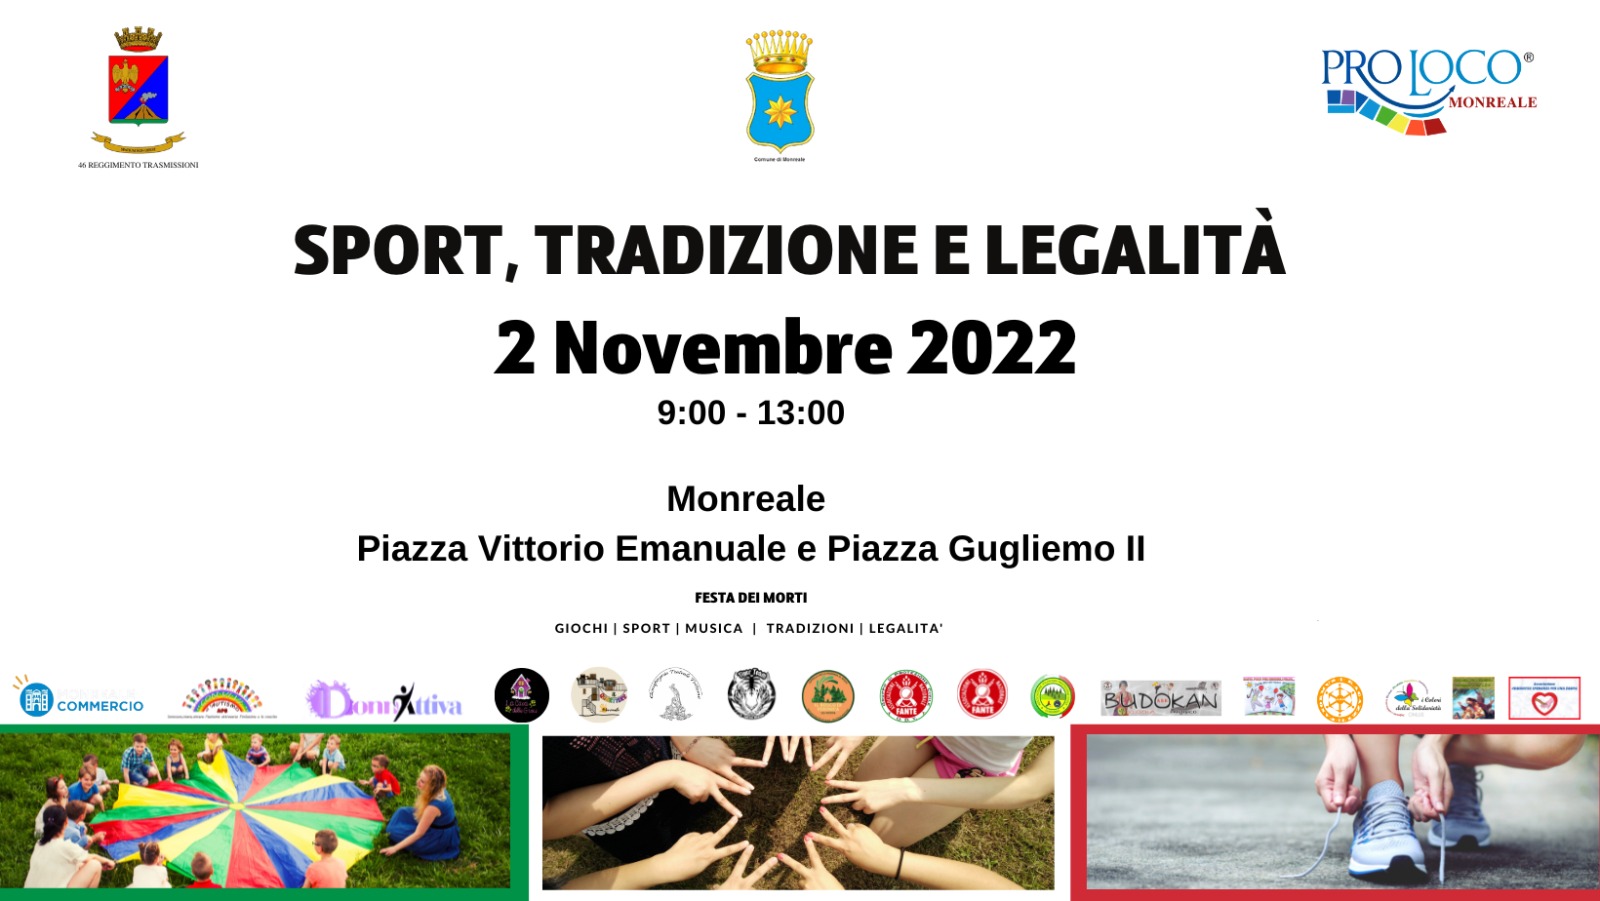 Sport, tradizione e legalità”, 2 Novembre 2022, dalle ore 9.00 alle ore 13.00 presso Piazza Guglielmo ll e Piazza Vittorio Emanuele.